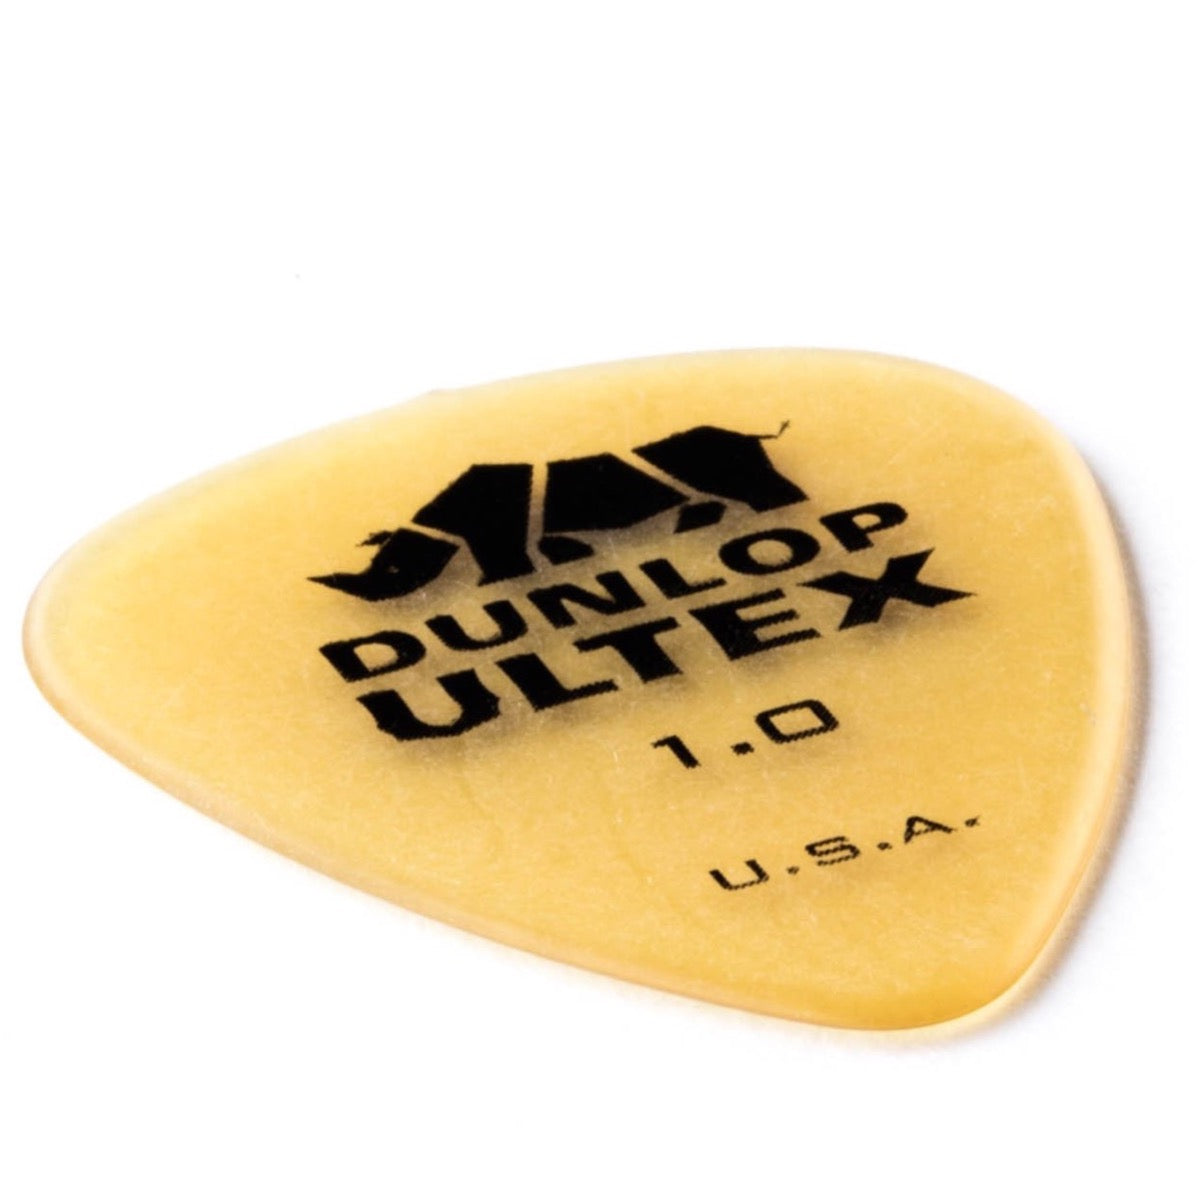 Dunlop Ultex Standard Picks, 72-Pack, 1.0mm